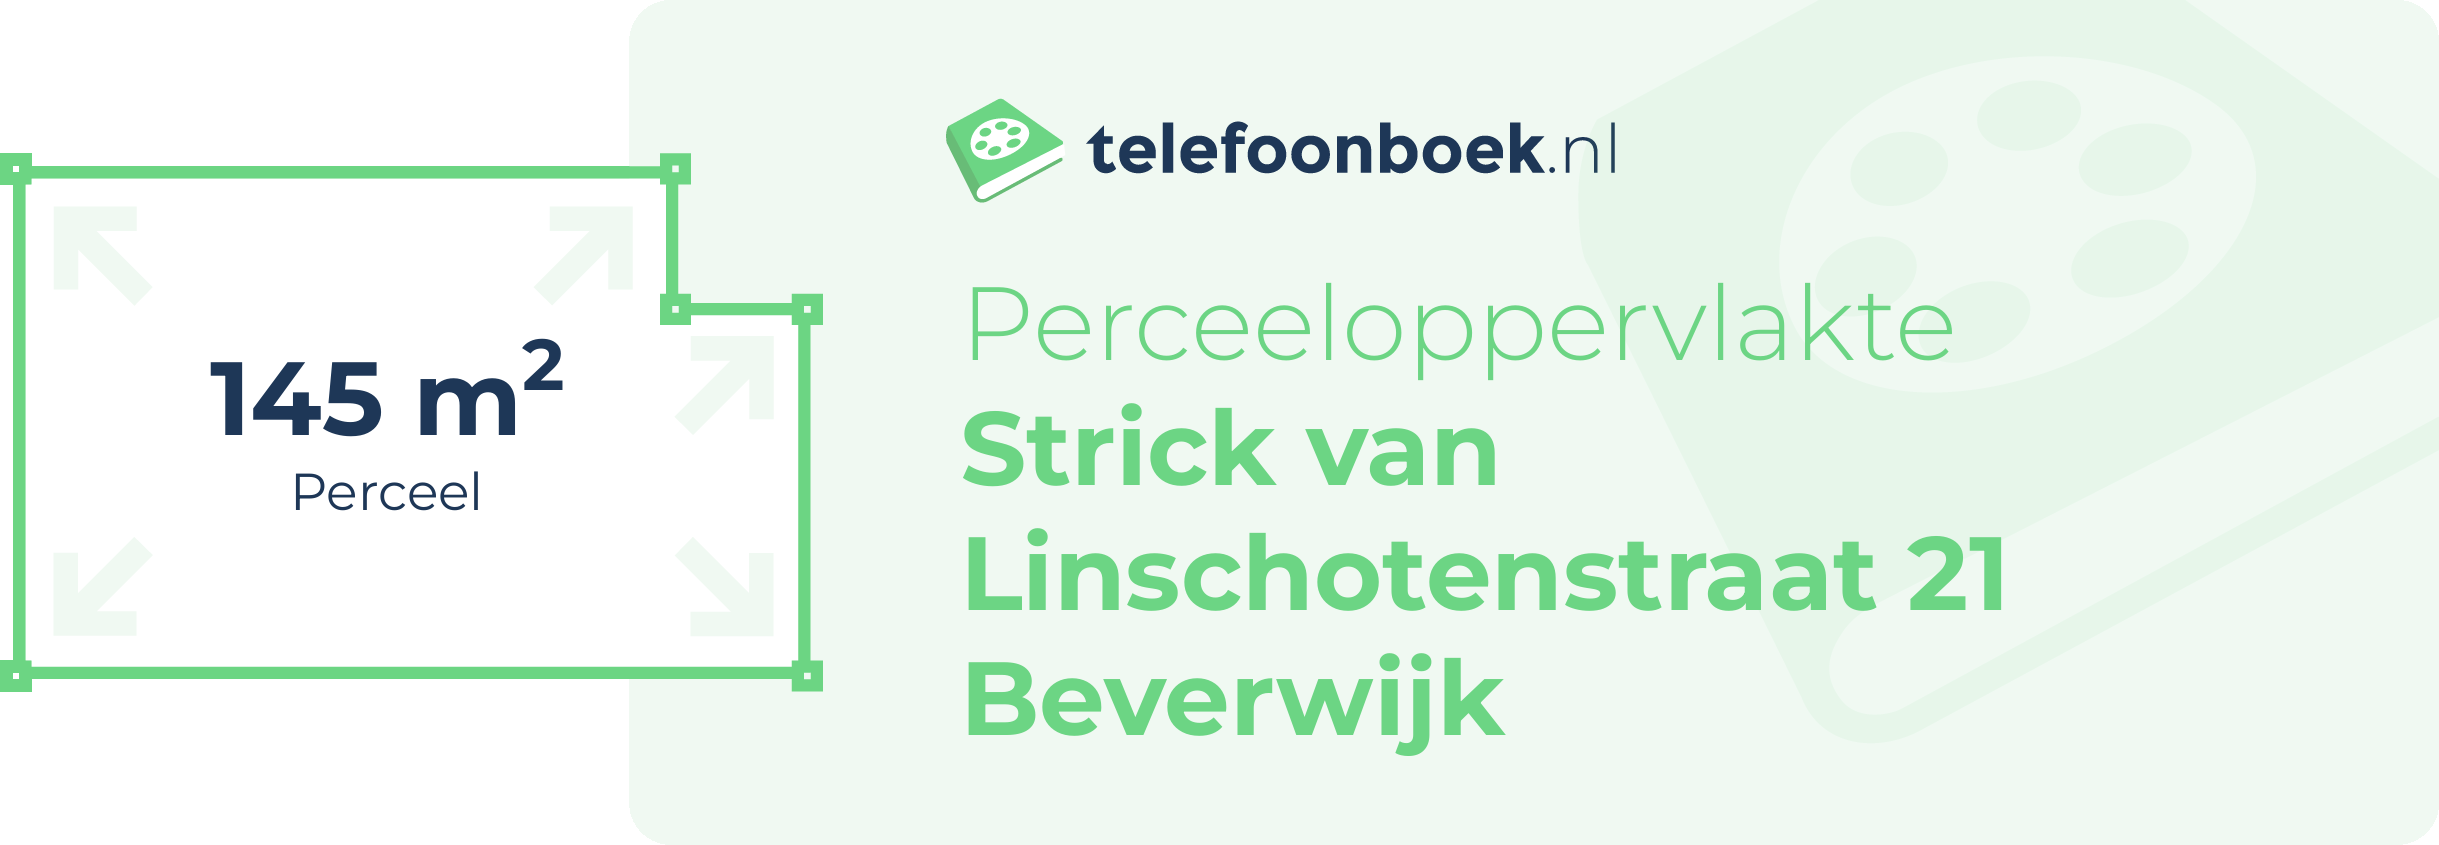 Perceeloppervlakte Strick Van Linschotenstraat 21 Beverwijk